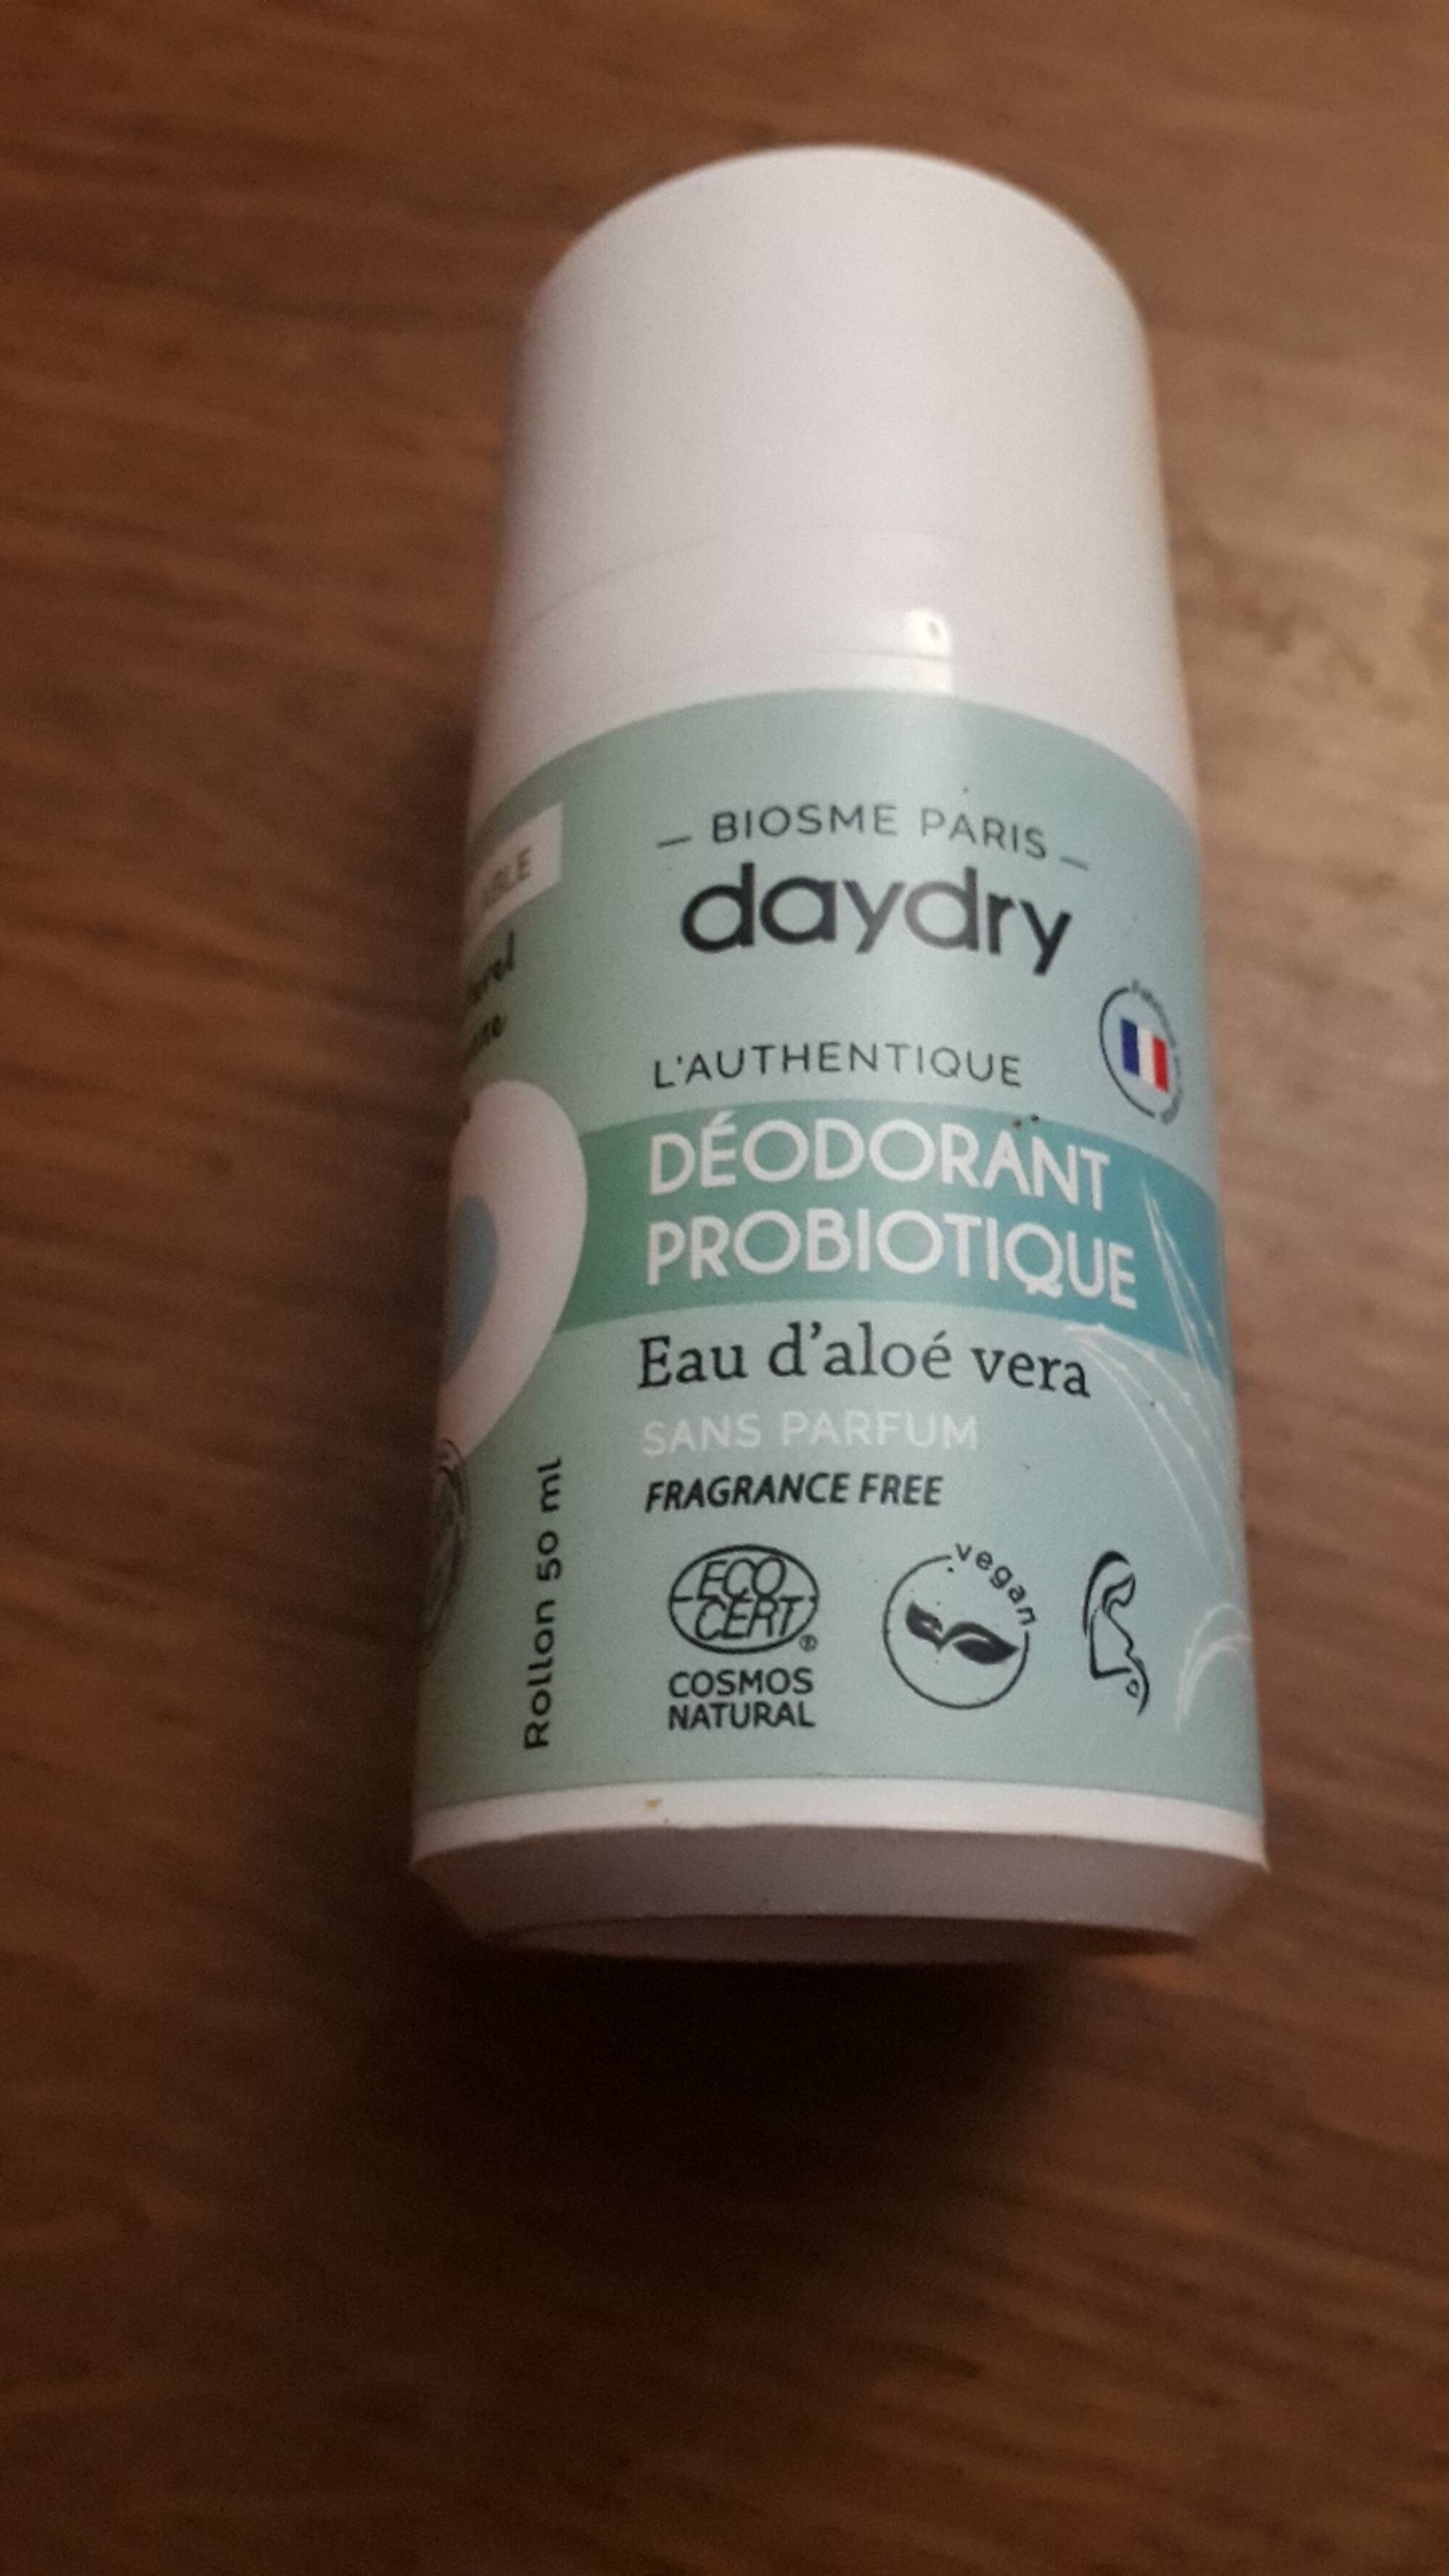 BIOSME PARIS - Daydry - Déodorant probiotique